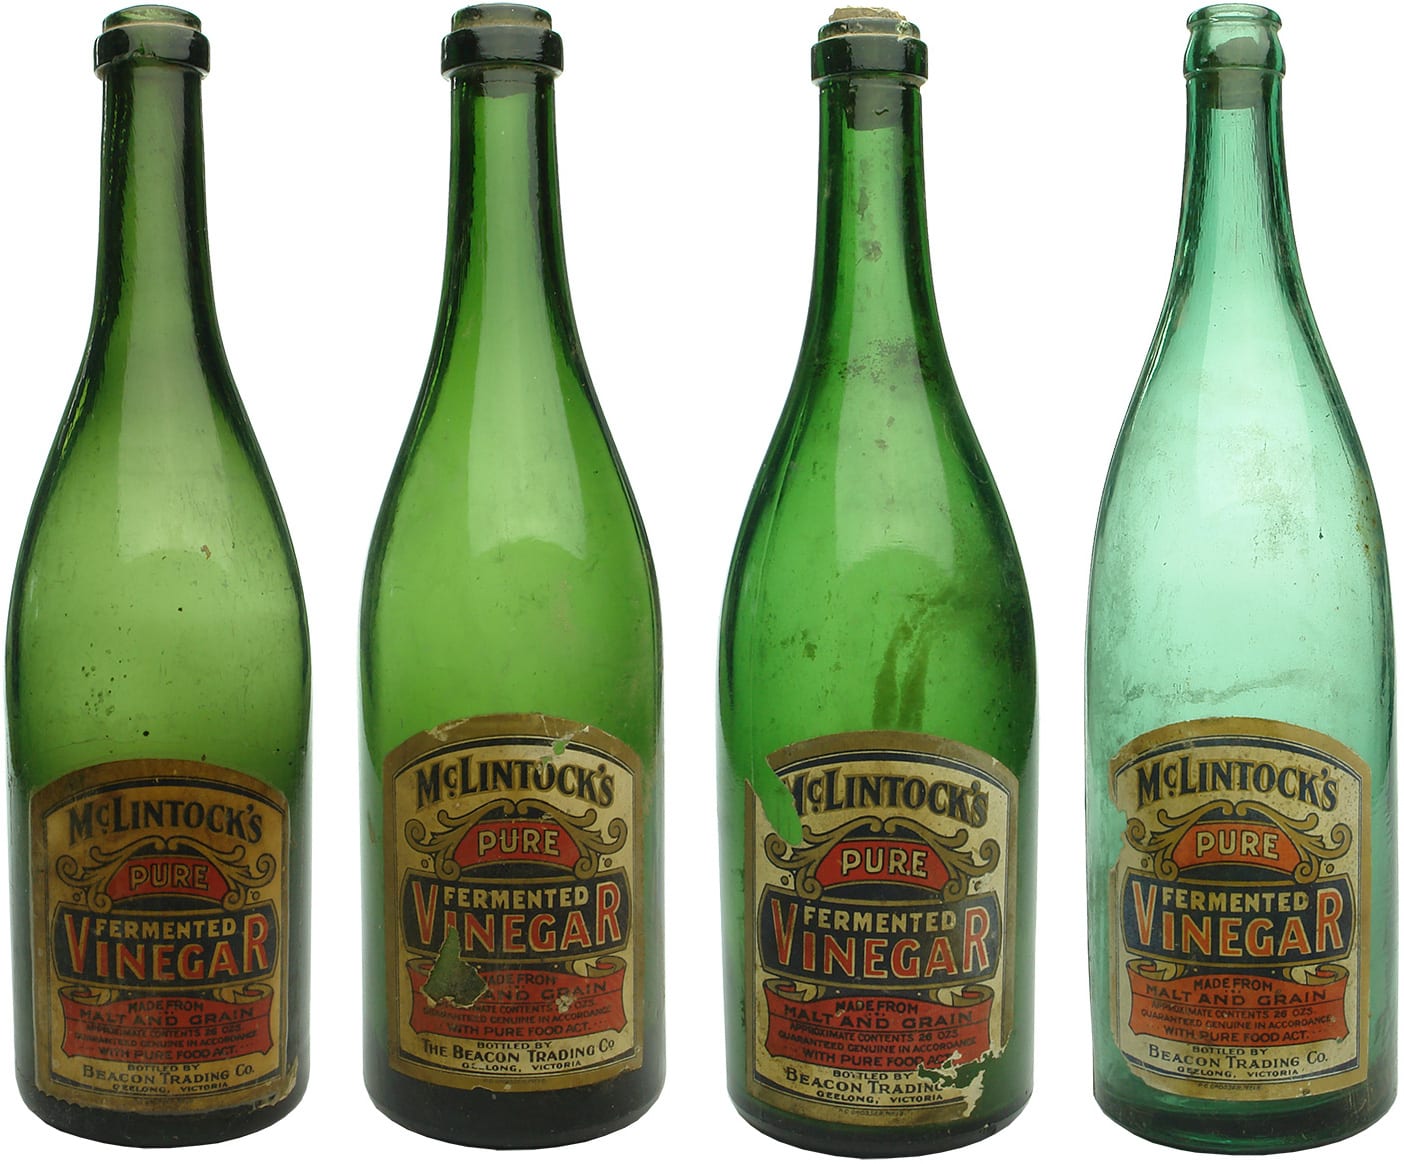 Labelled McLintock's Beacon Trading Vinegar Bottles